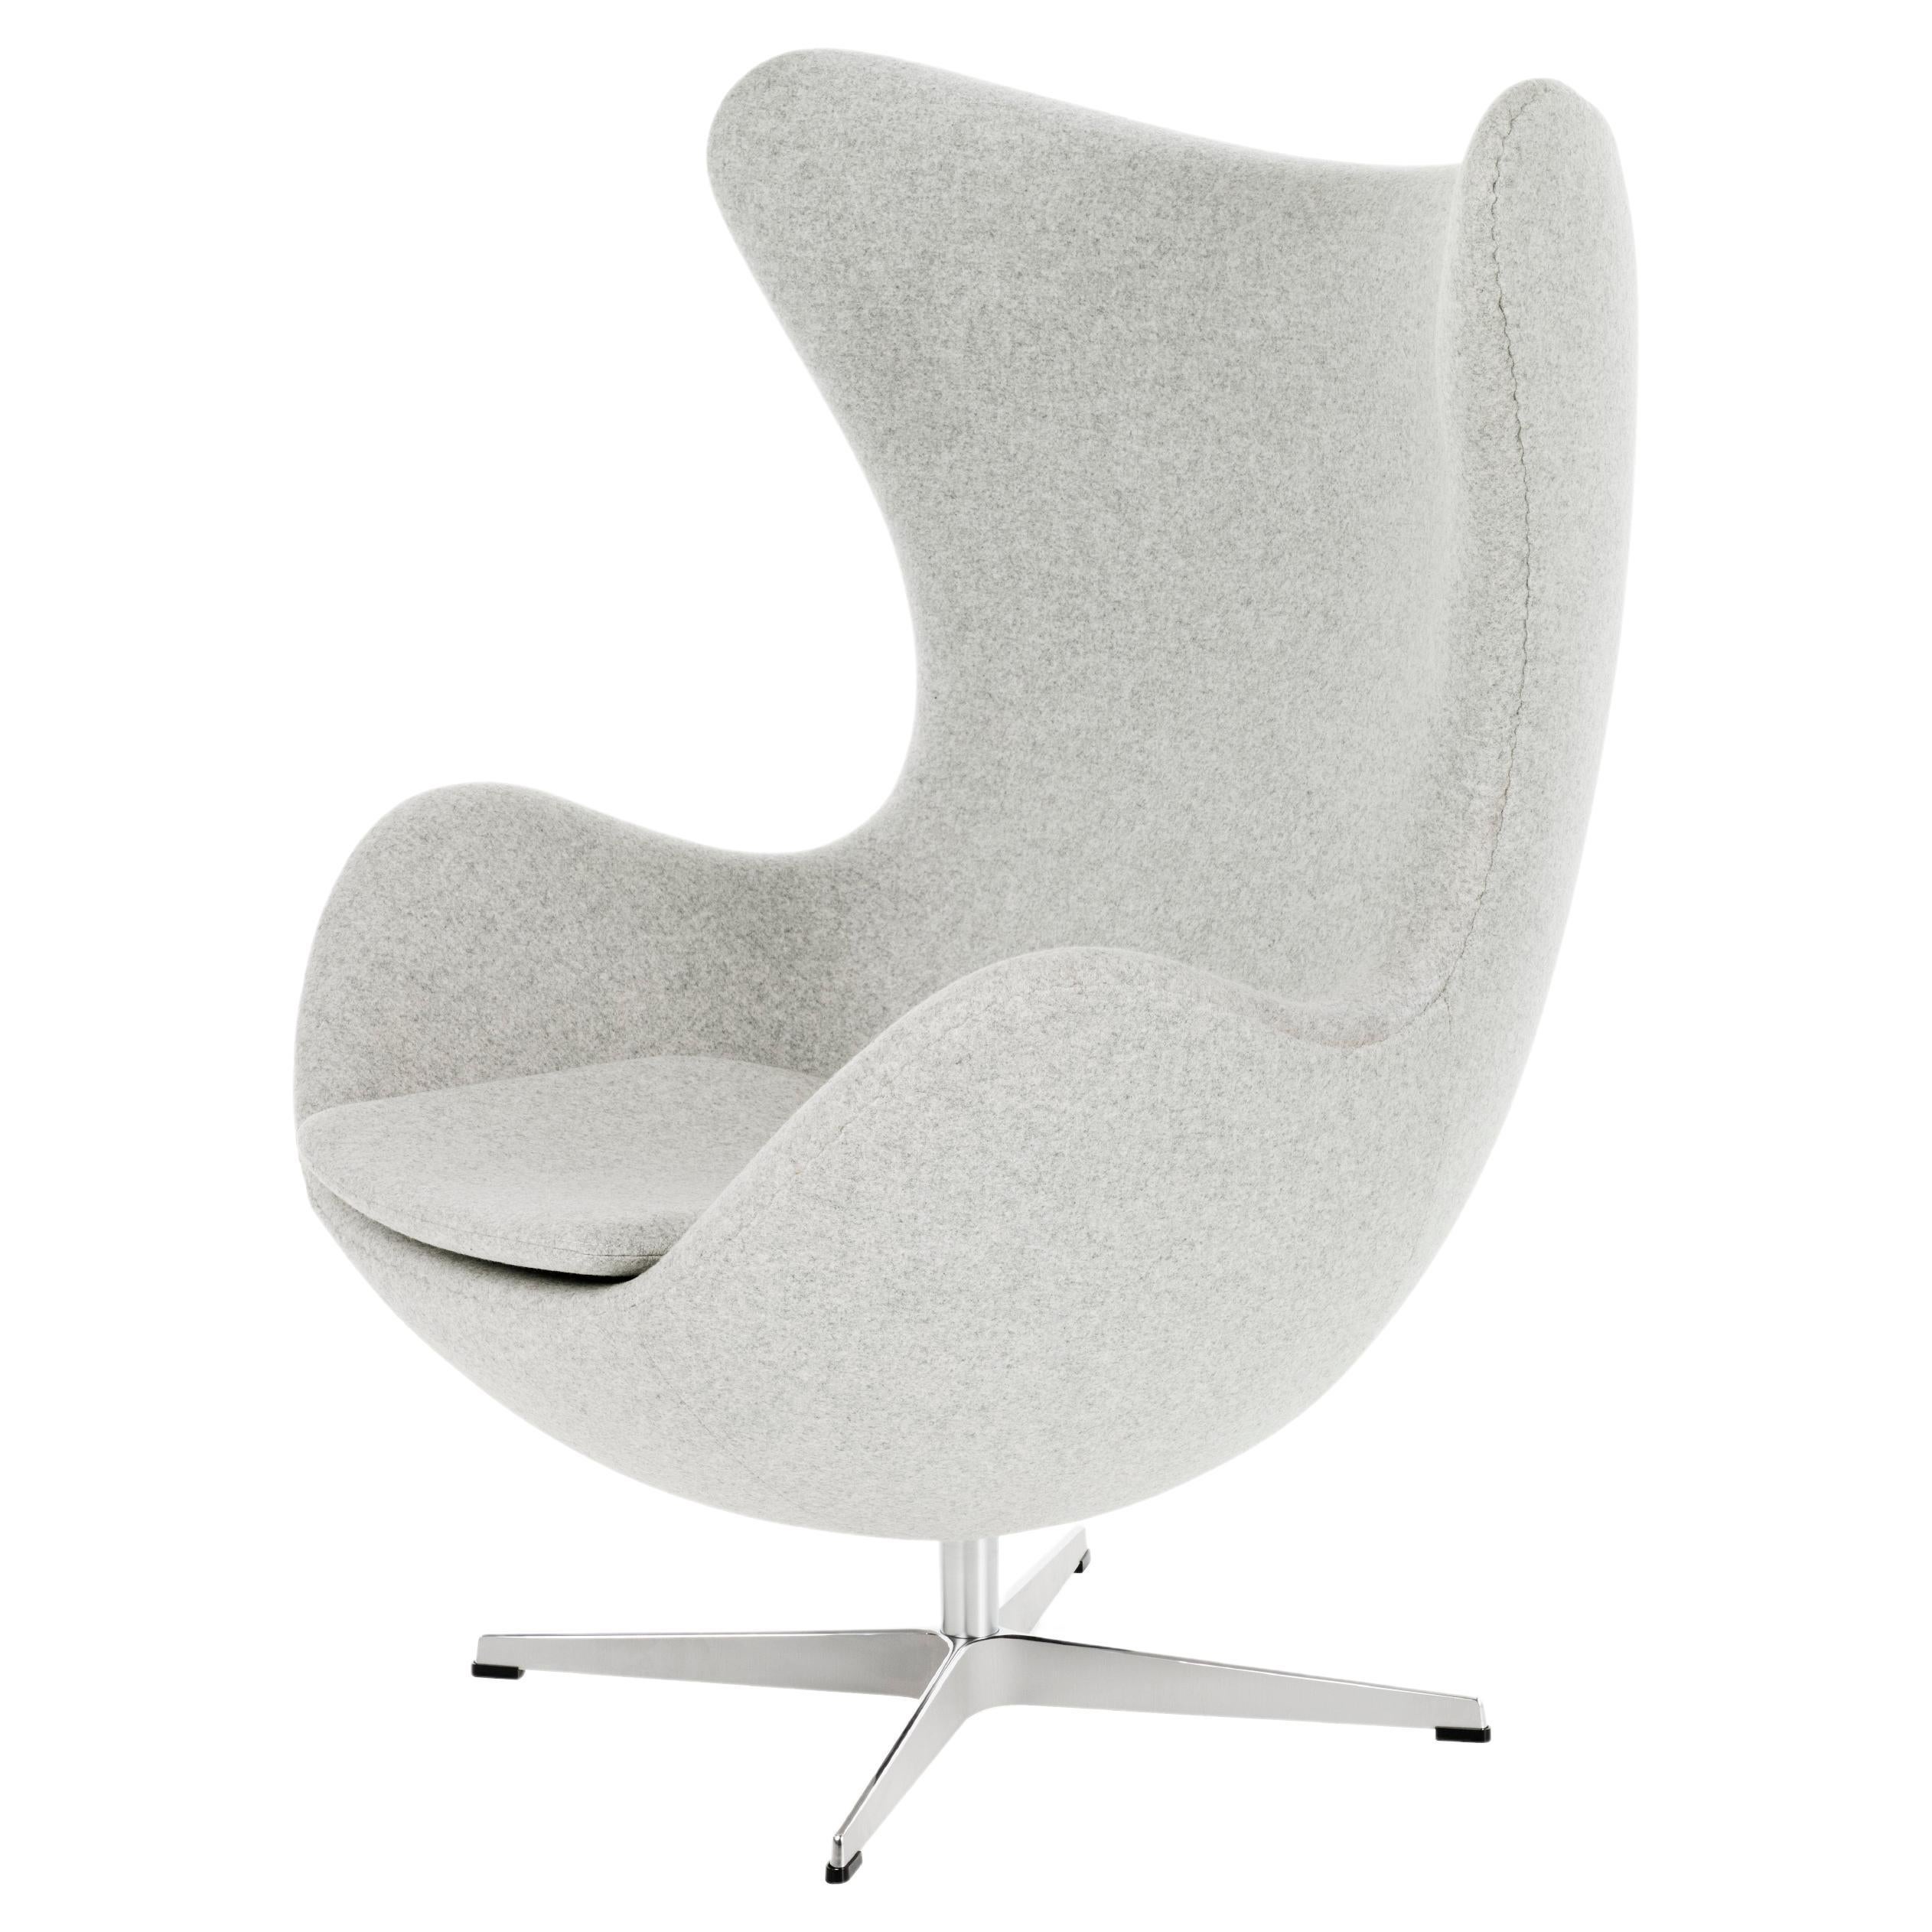 Arne Jacobsen 'Egg' Chair for Fritz Hansen in Fabric Upholstery (Cat. 2)